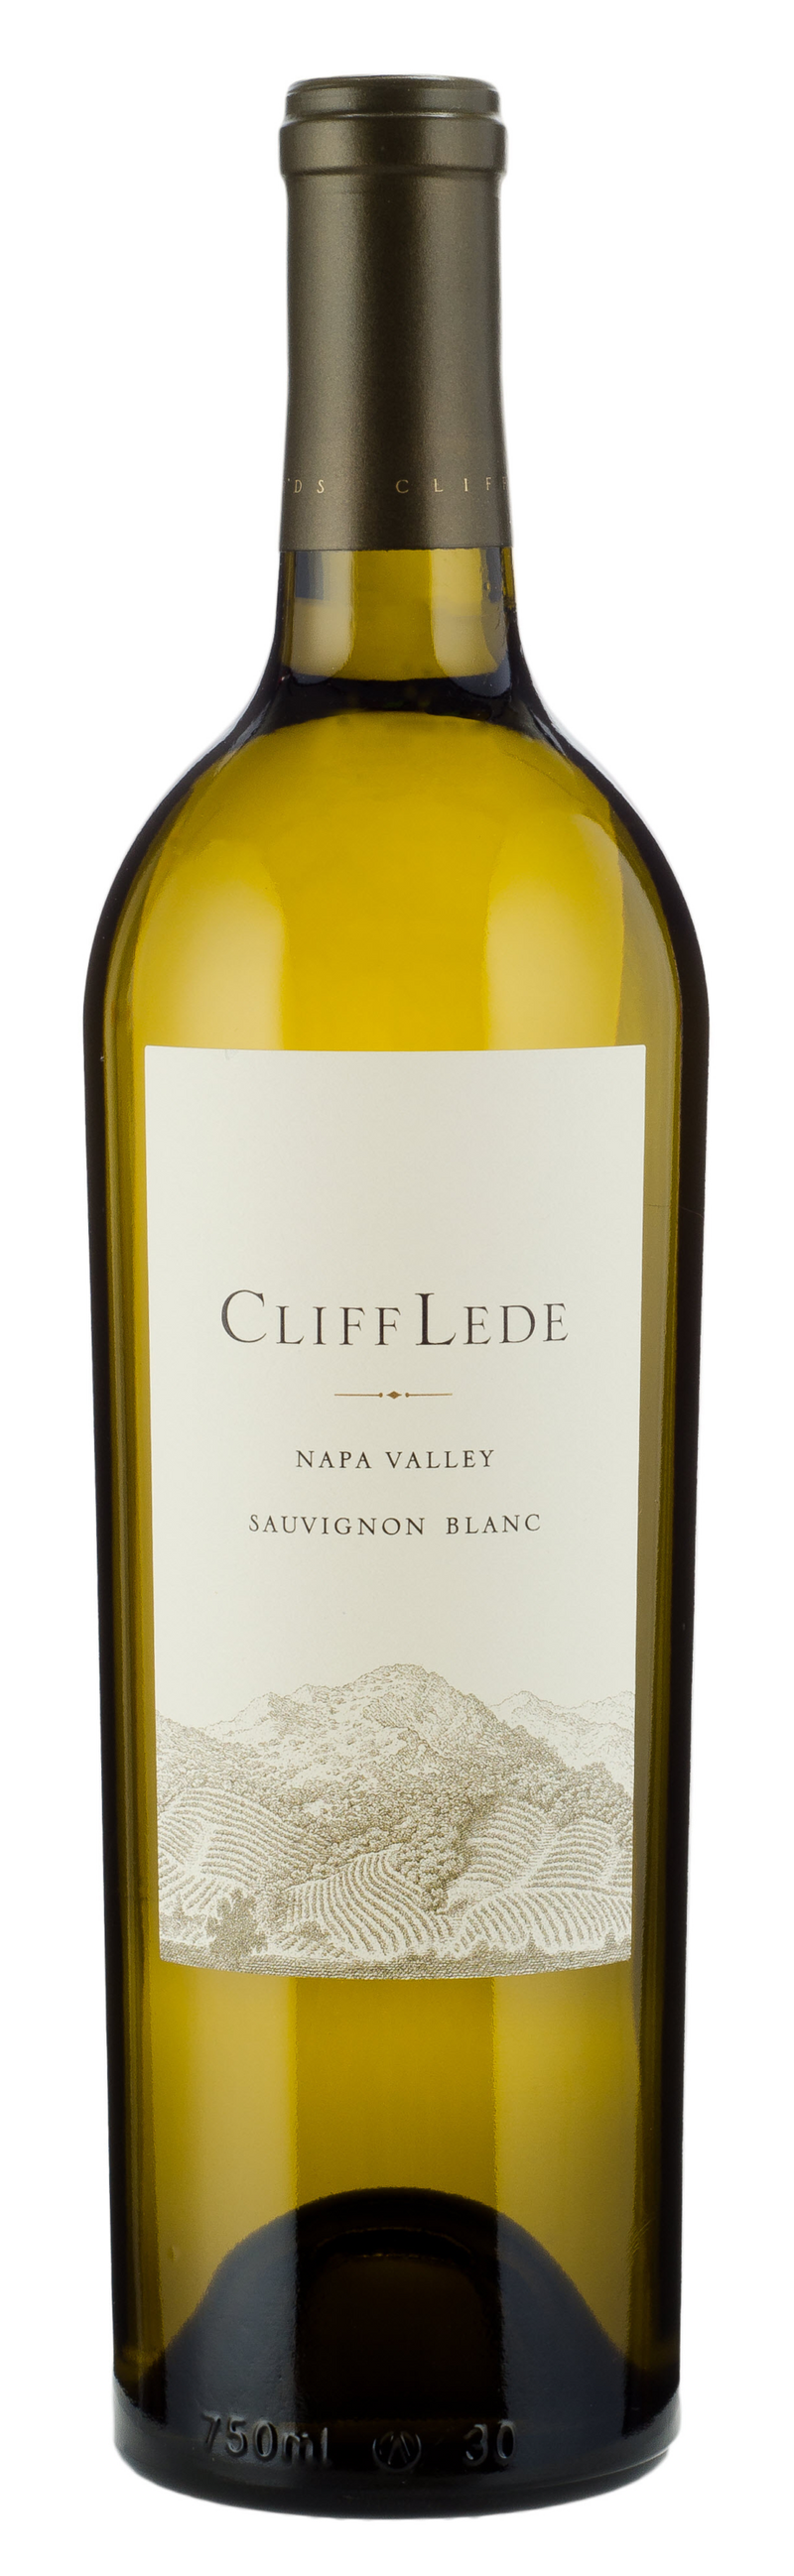 Cliff Lede Napa Valley Sauvignon Blanc 2019